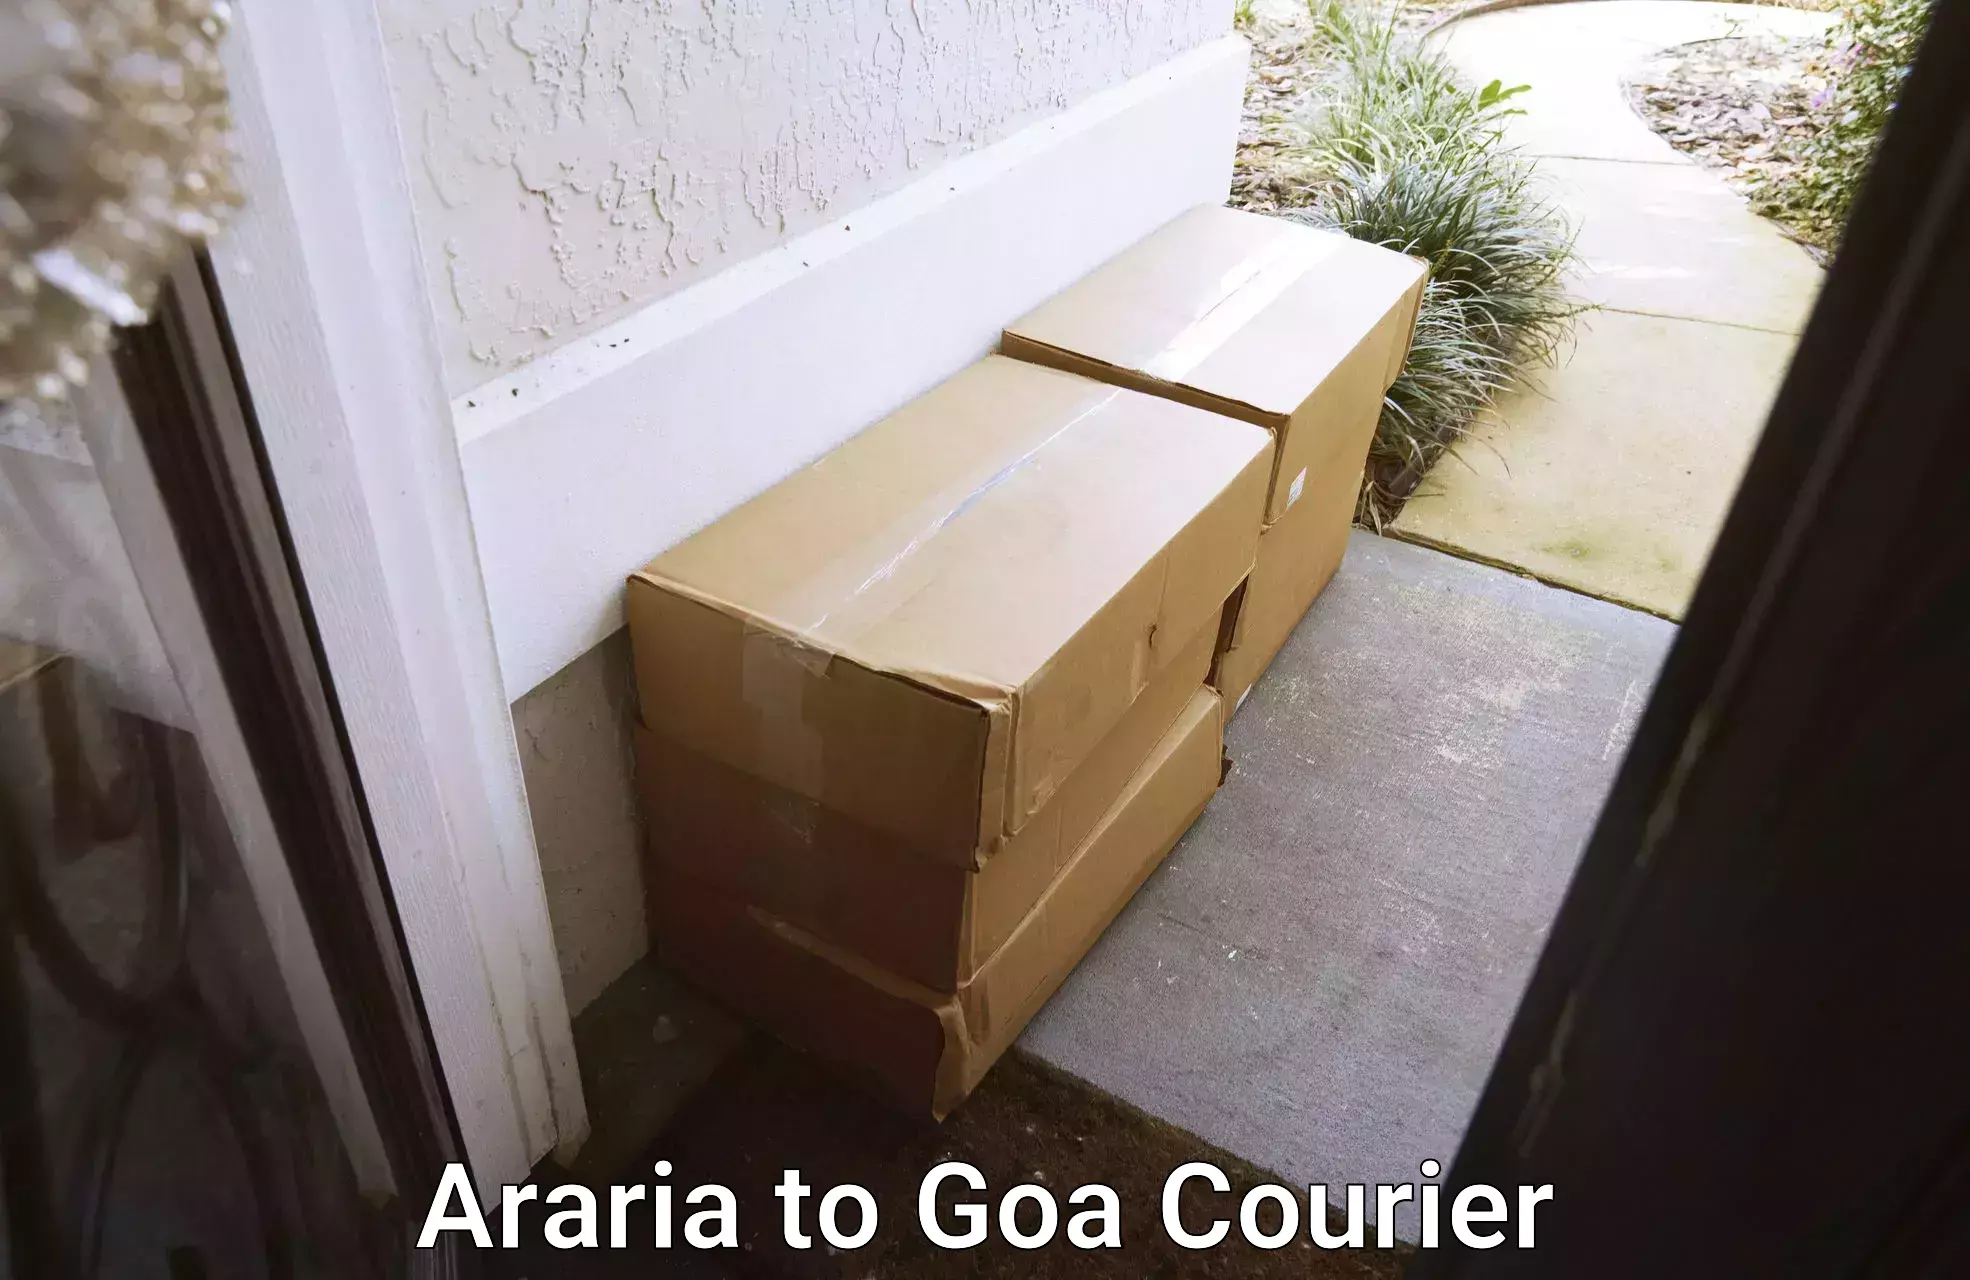 Full-service relocation Araria to Goa